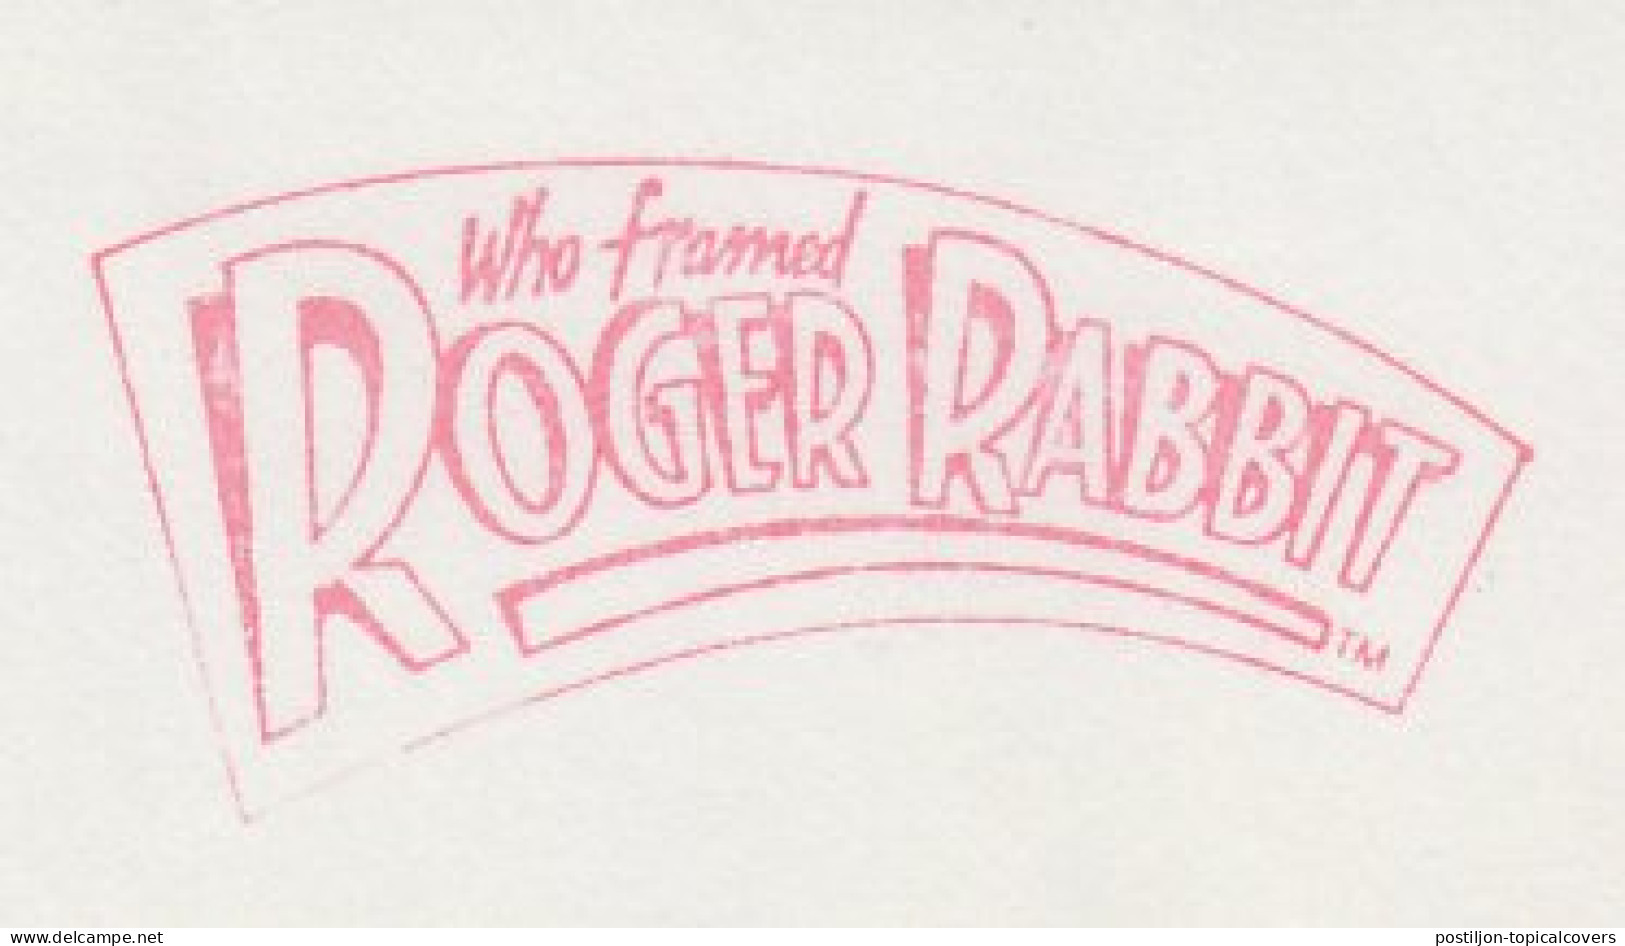 Meter Cut Netherlands 1989 Who Framed Roger Rabbit - Movie - Cinéma